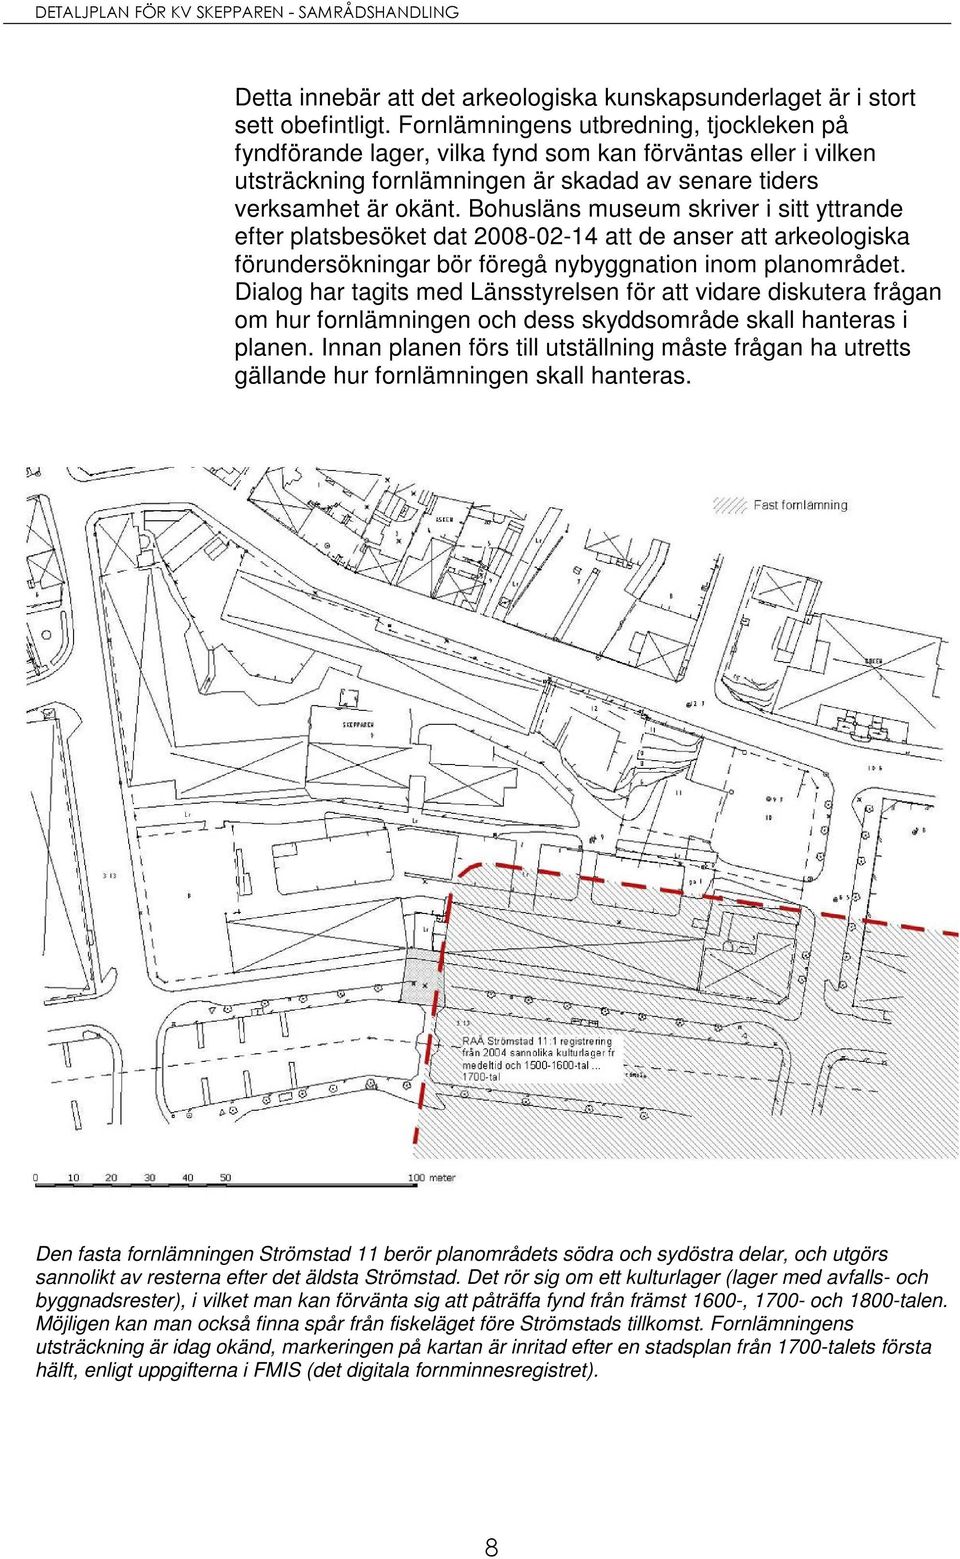 Bohusläns museum skriver i sitt yttrande efter platsbesöket dat 2008-02-14 att de anser att arkeologiska förundersökningar bör föregå nybyggnation inom planområdet.